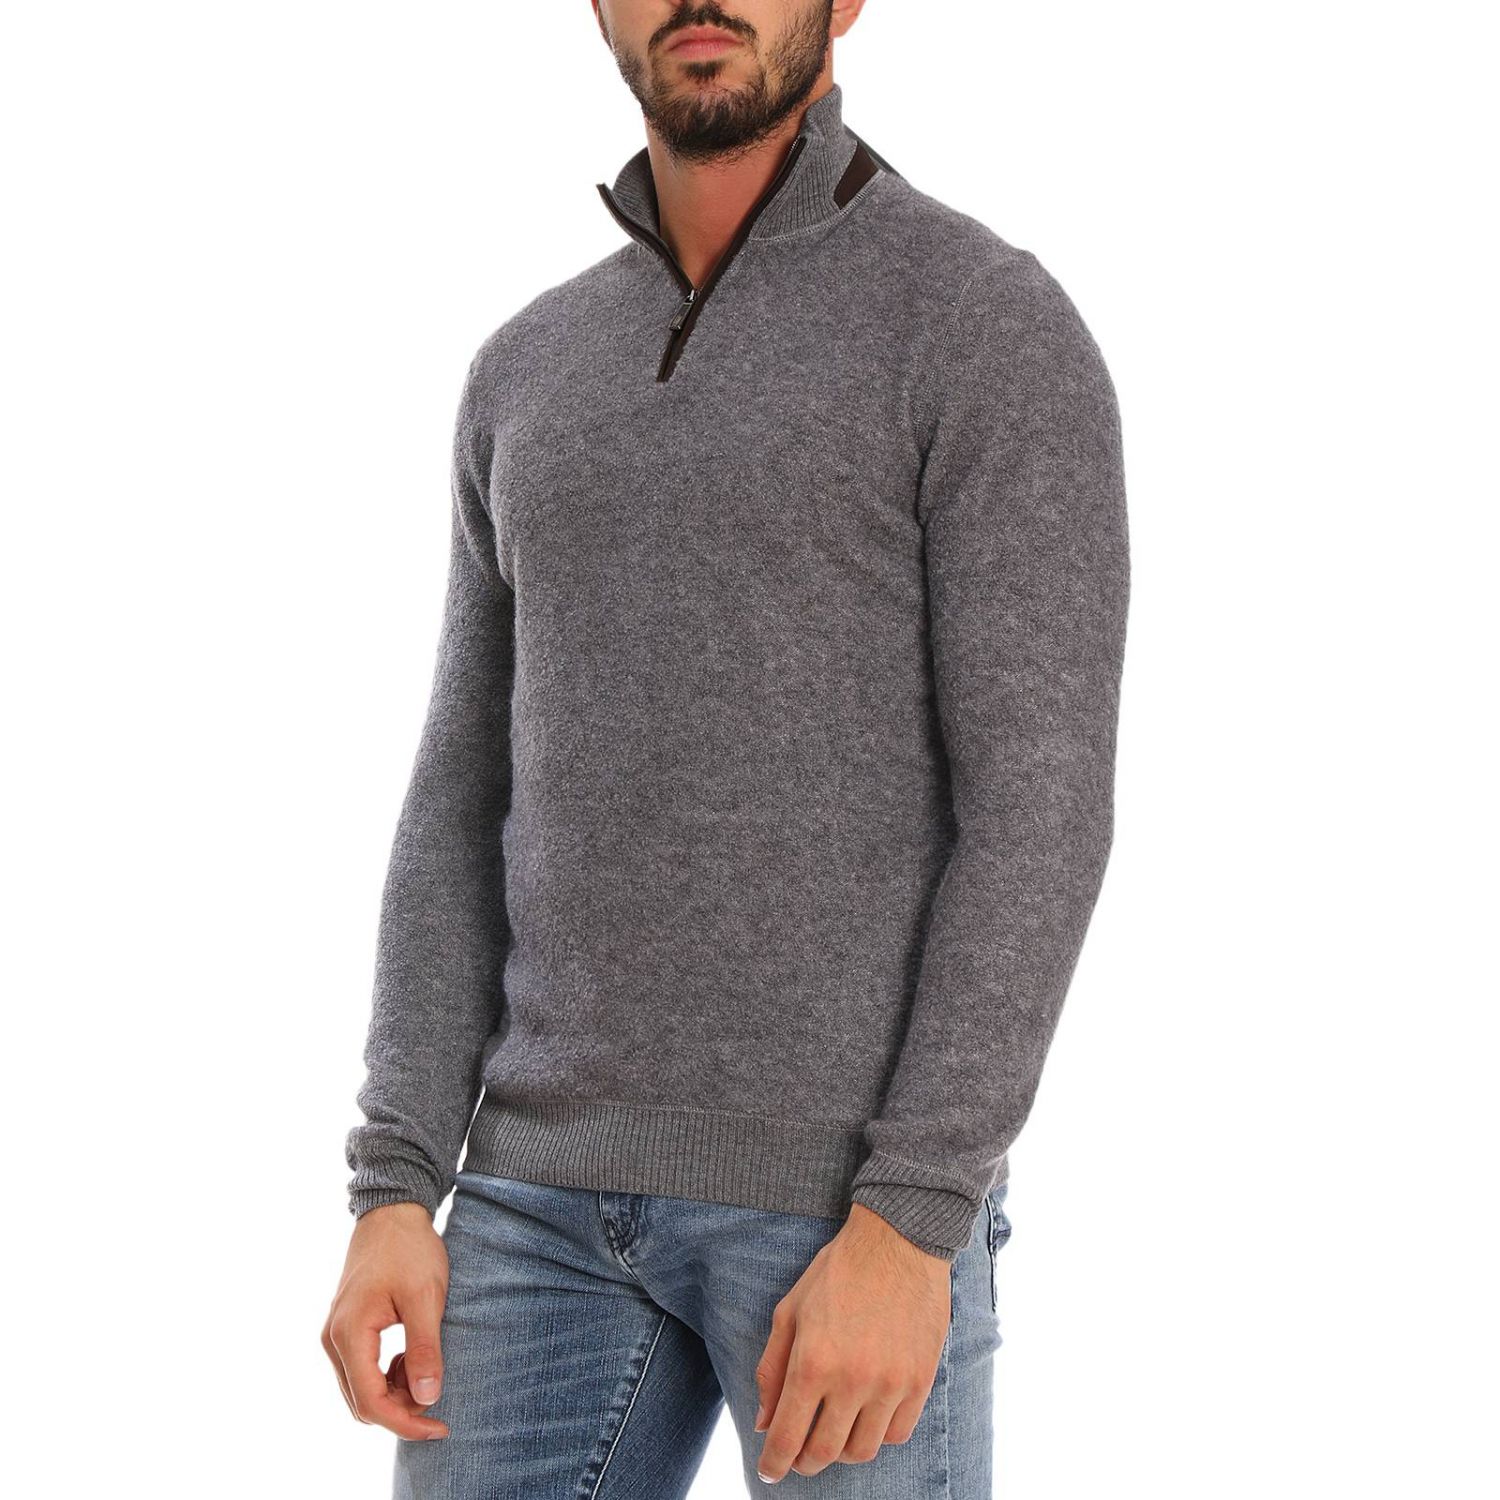 Ermenegildo Zegna Outlet: Sweater men | Sweater Ermenegildo Zegna Men ...